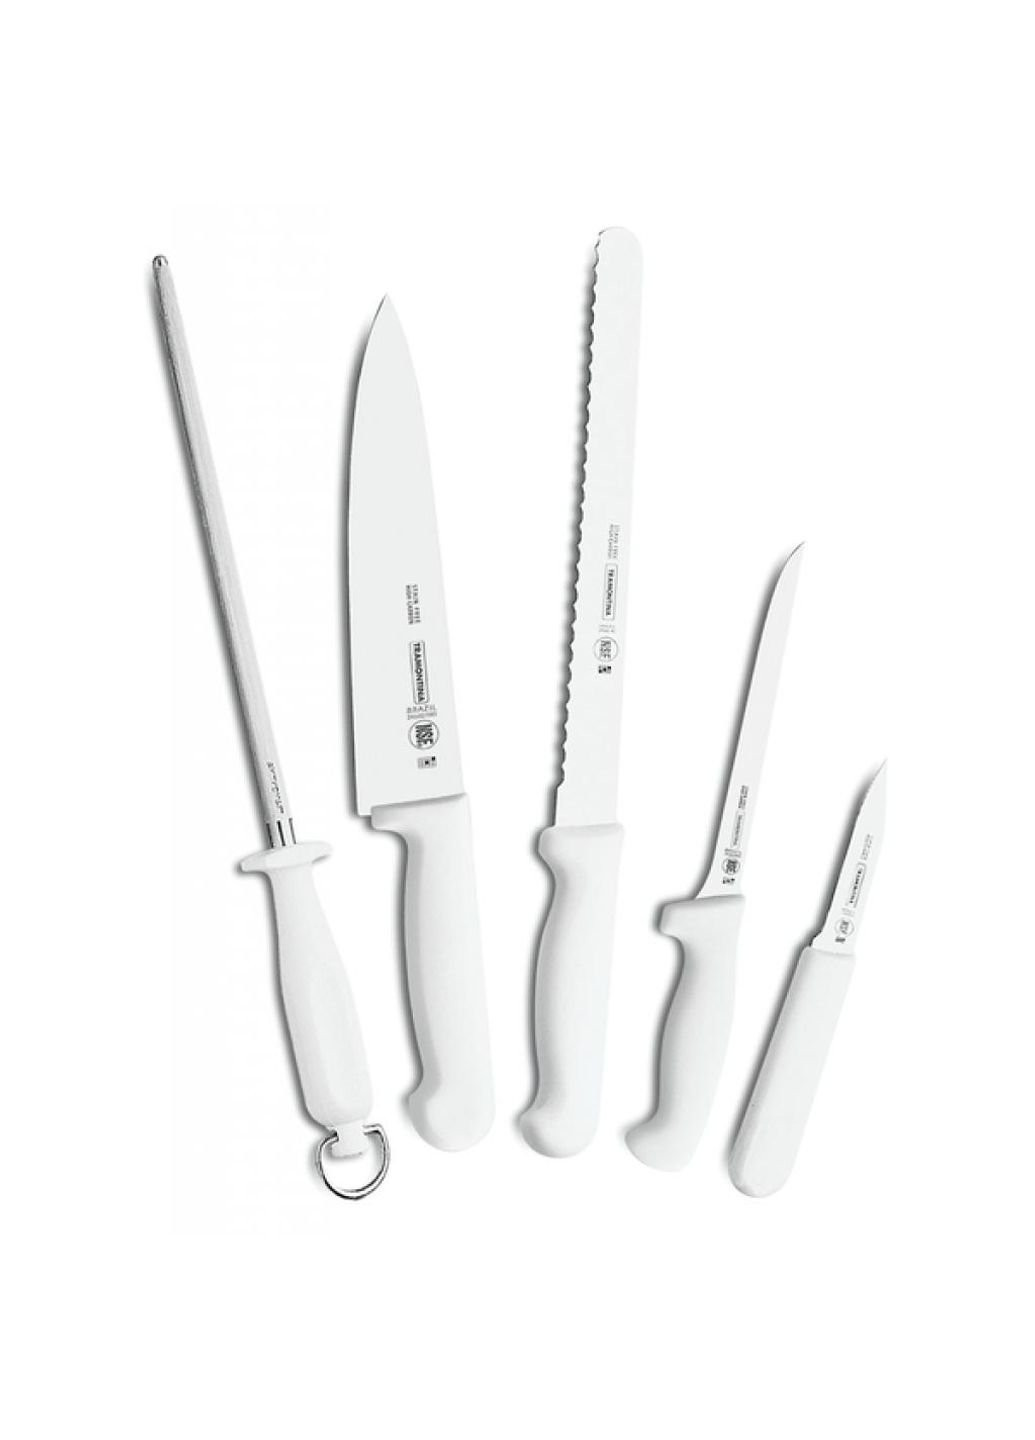 Набор ножей Profissional Master Chefs 6 шт (24699/816) Tramontina комбинированные,